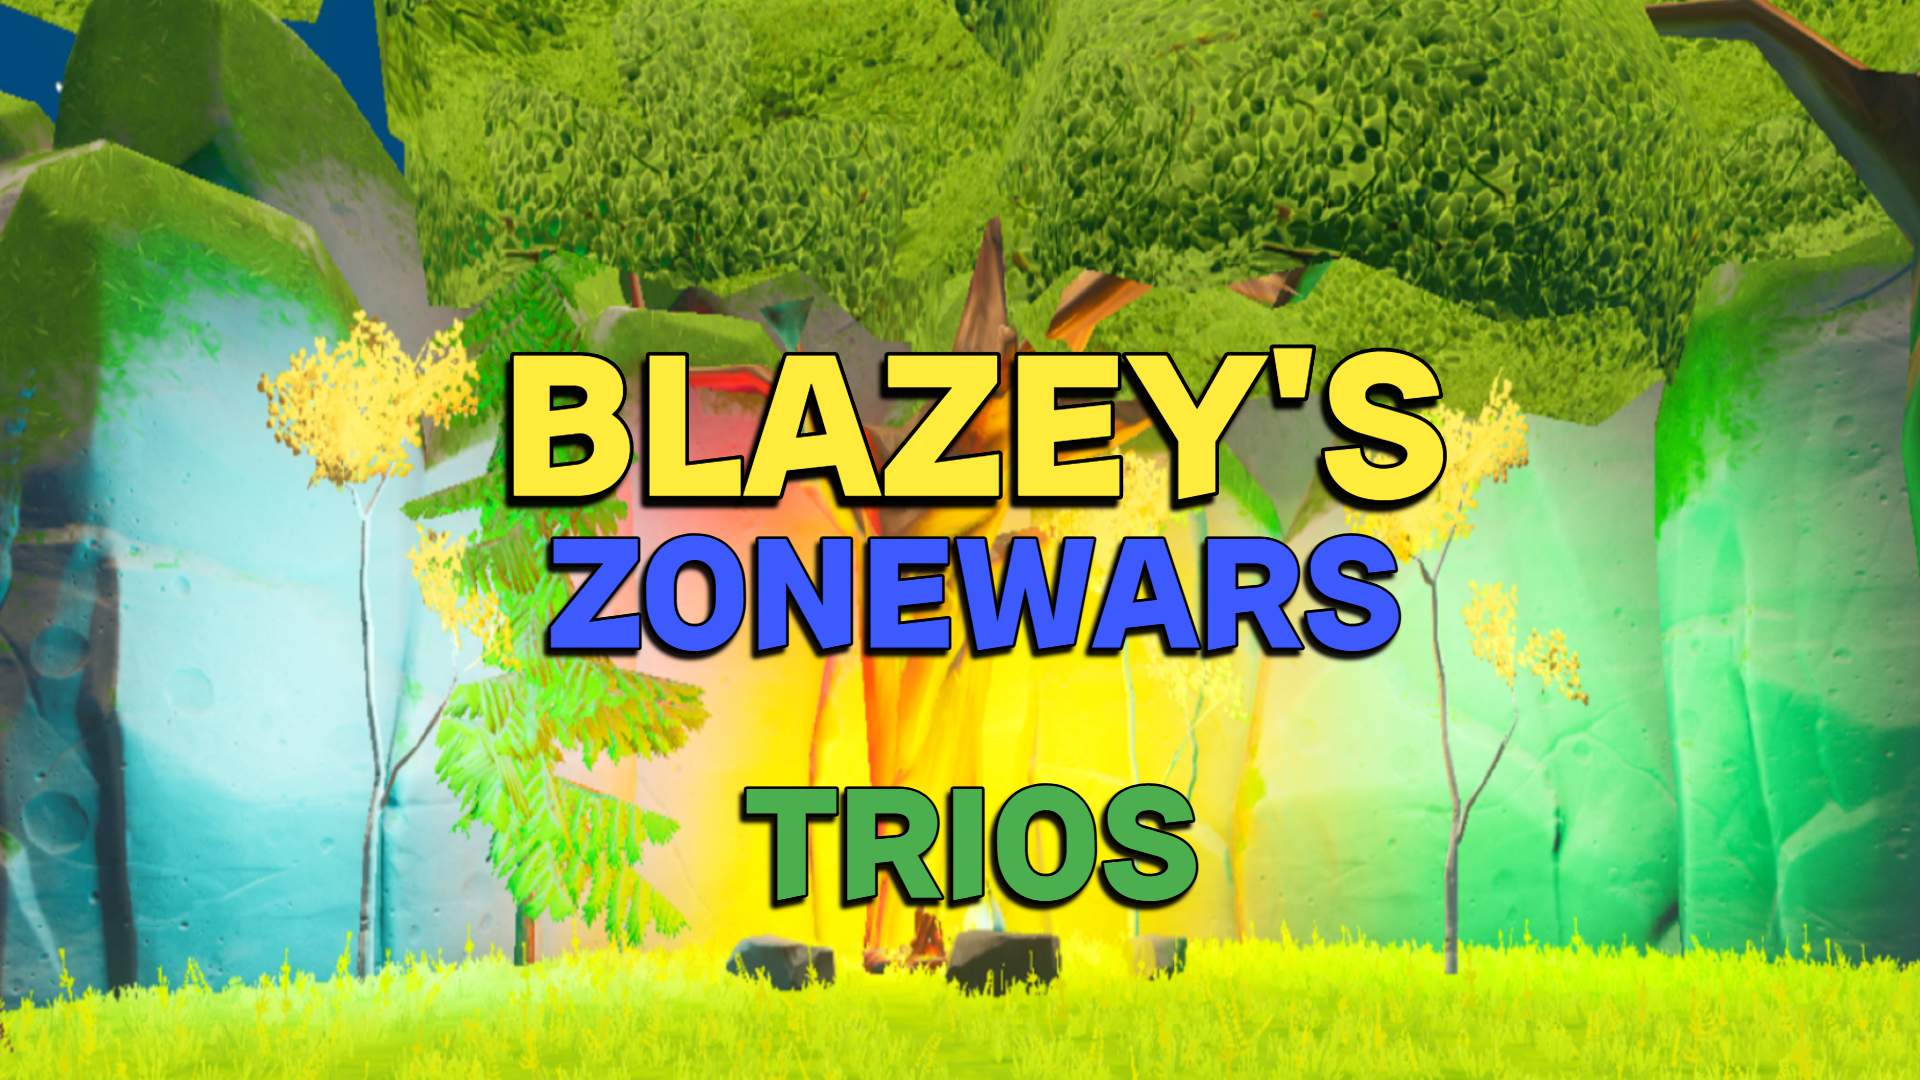 BLAZEY'S ZONEWARS TRIOS